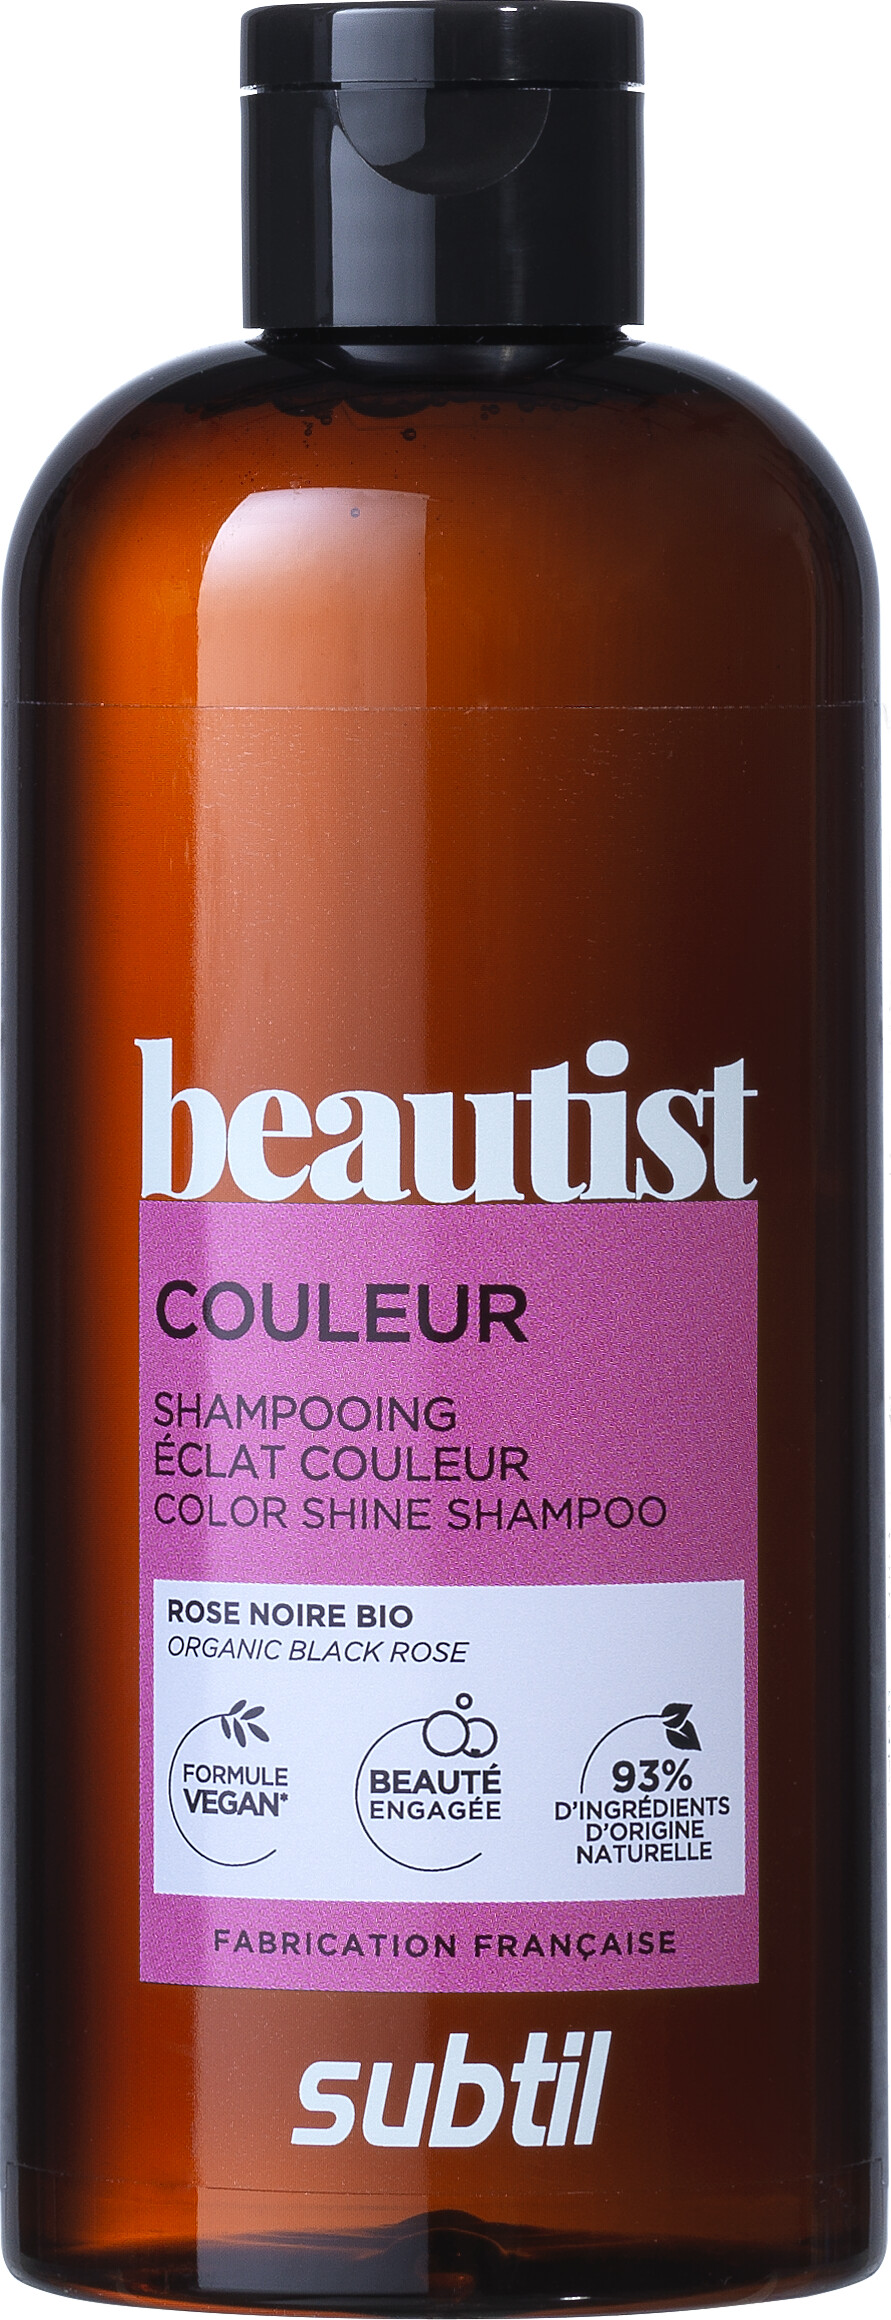 Se Subtil Beautist - Color Shine Shampoo - Organic Black Rose 300 Ml hos Gucca.dk